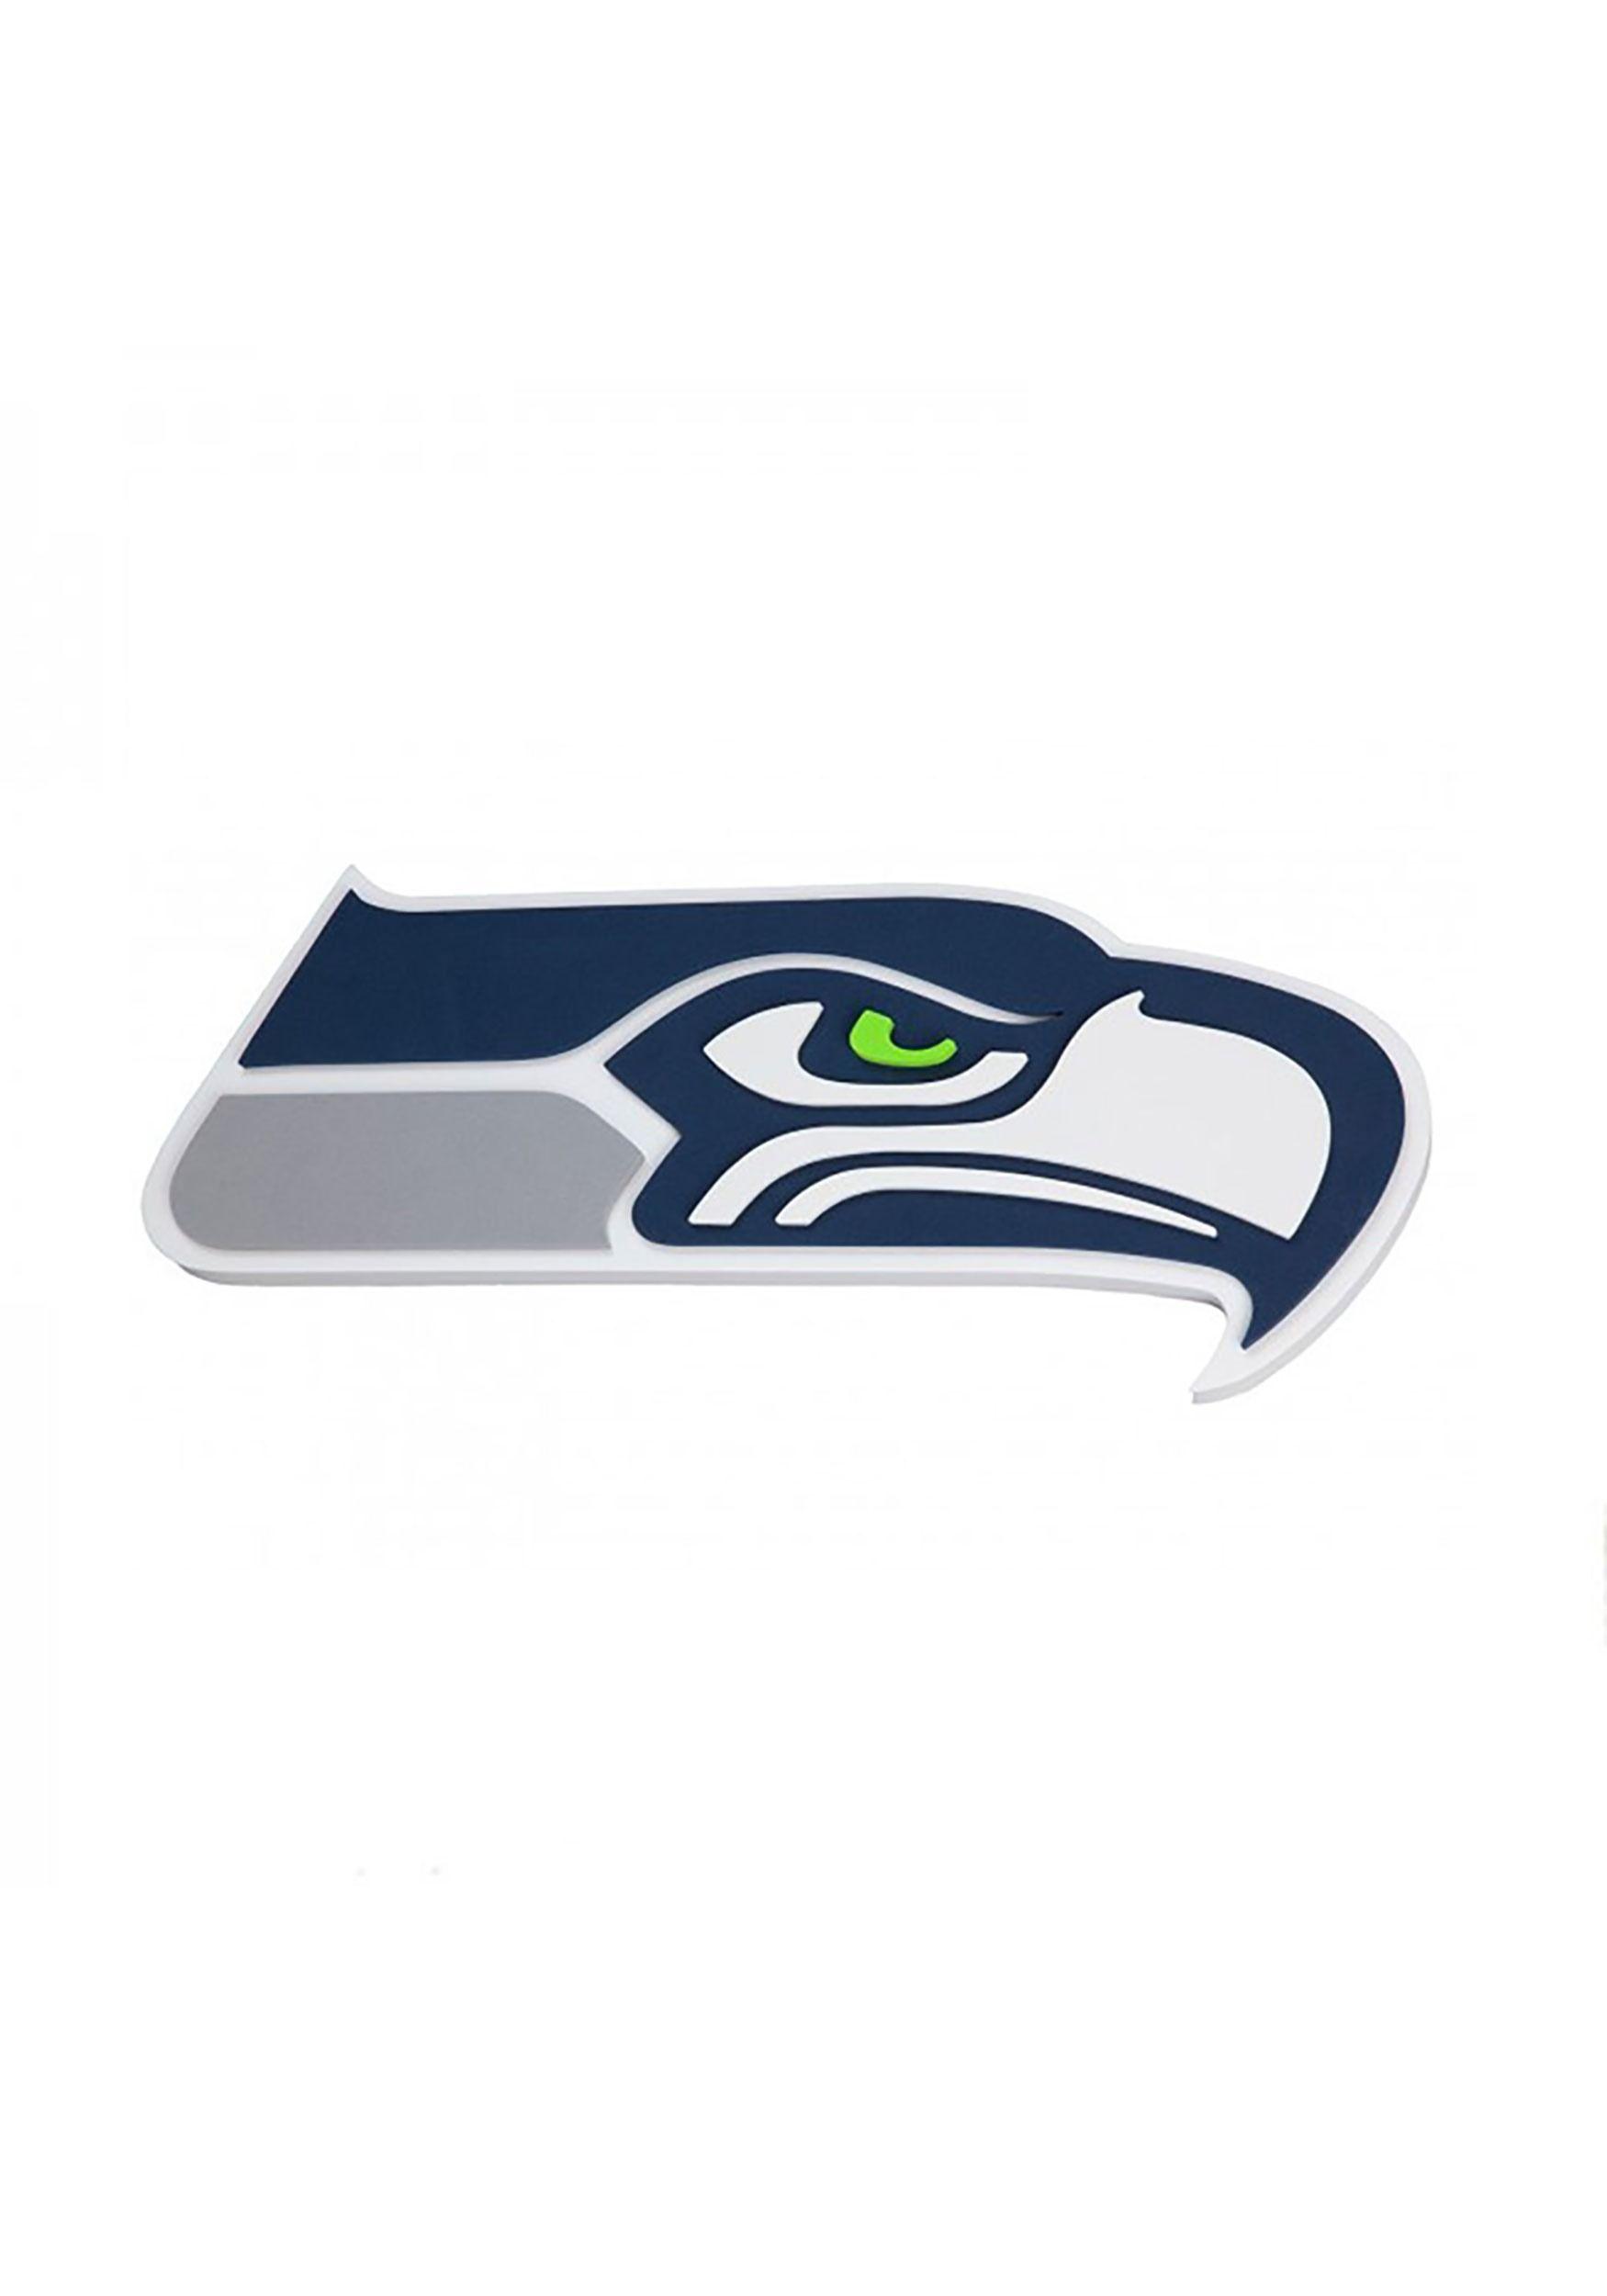 Seattle Seahawks Logo - Seattle Seahawks NFL Logo Foam Sign